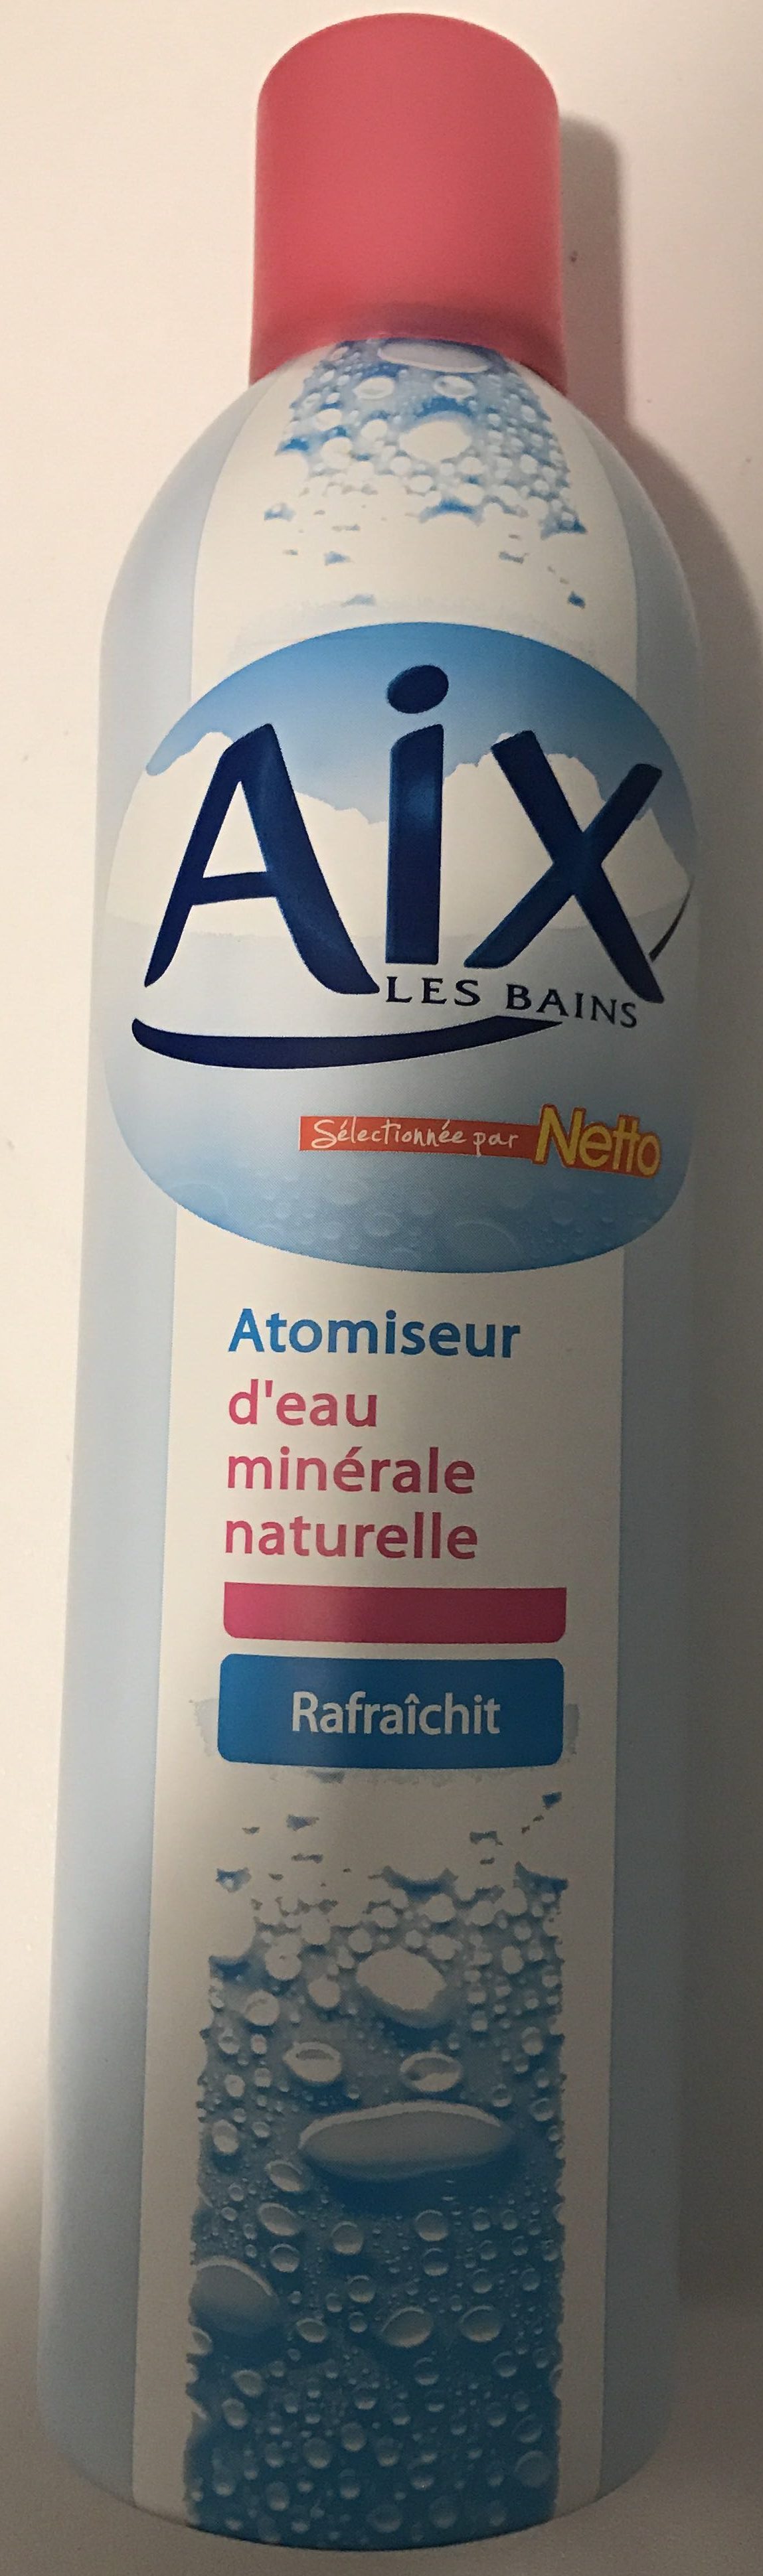 Atomiseur d'eau minérale naturelle - Product - fr